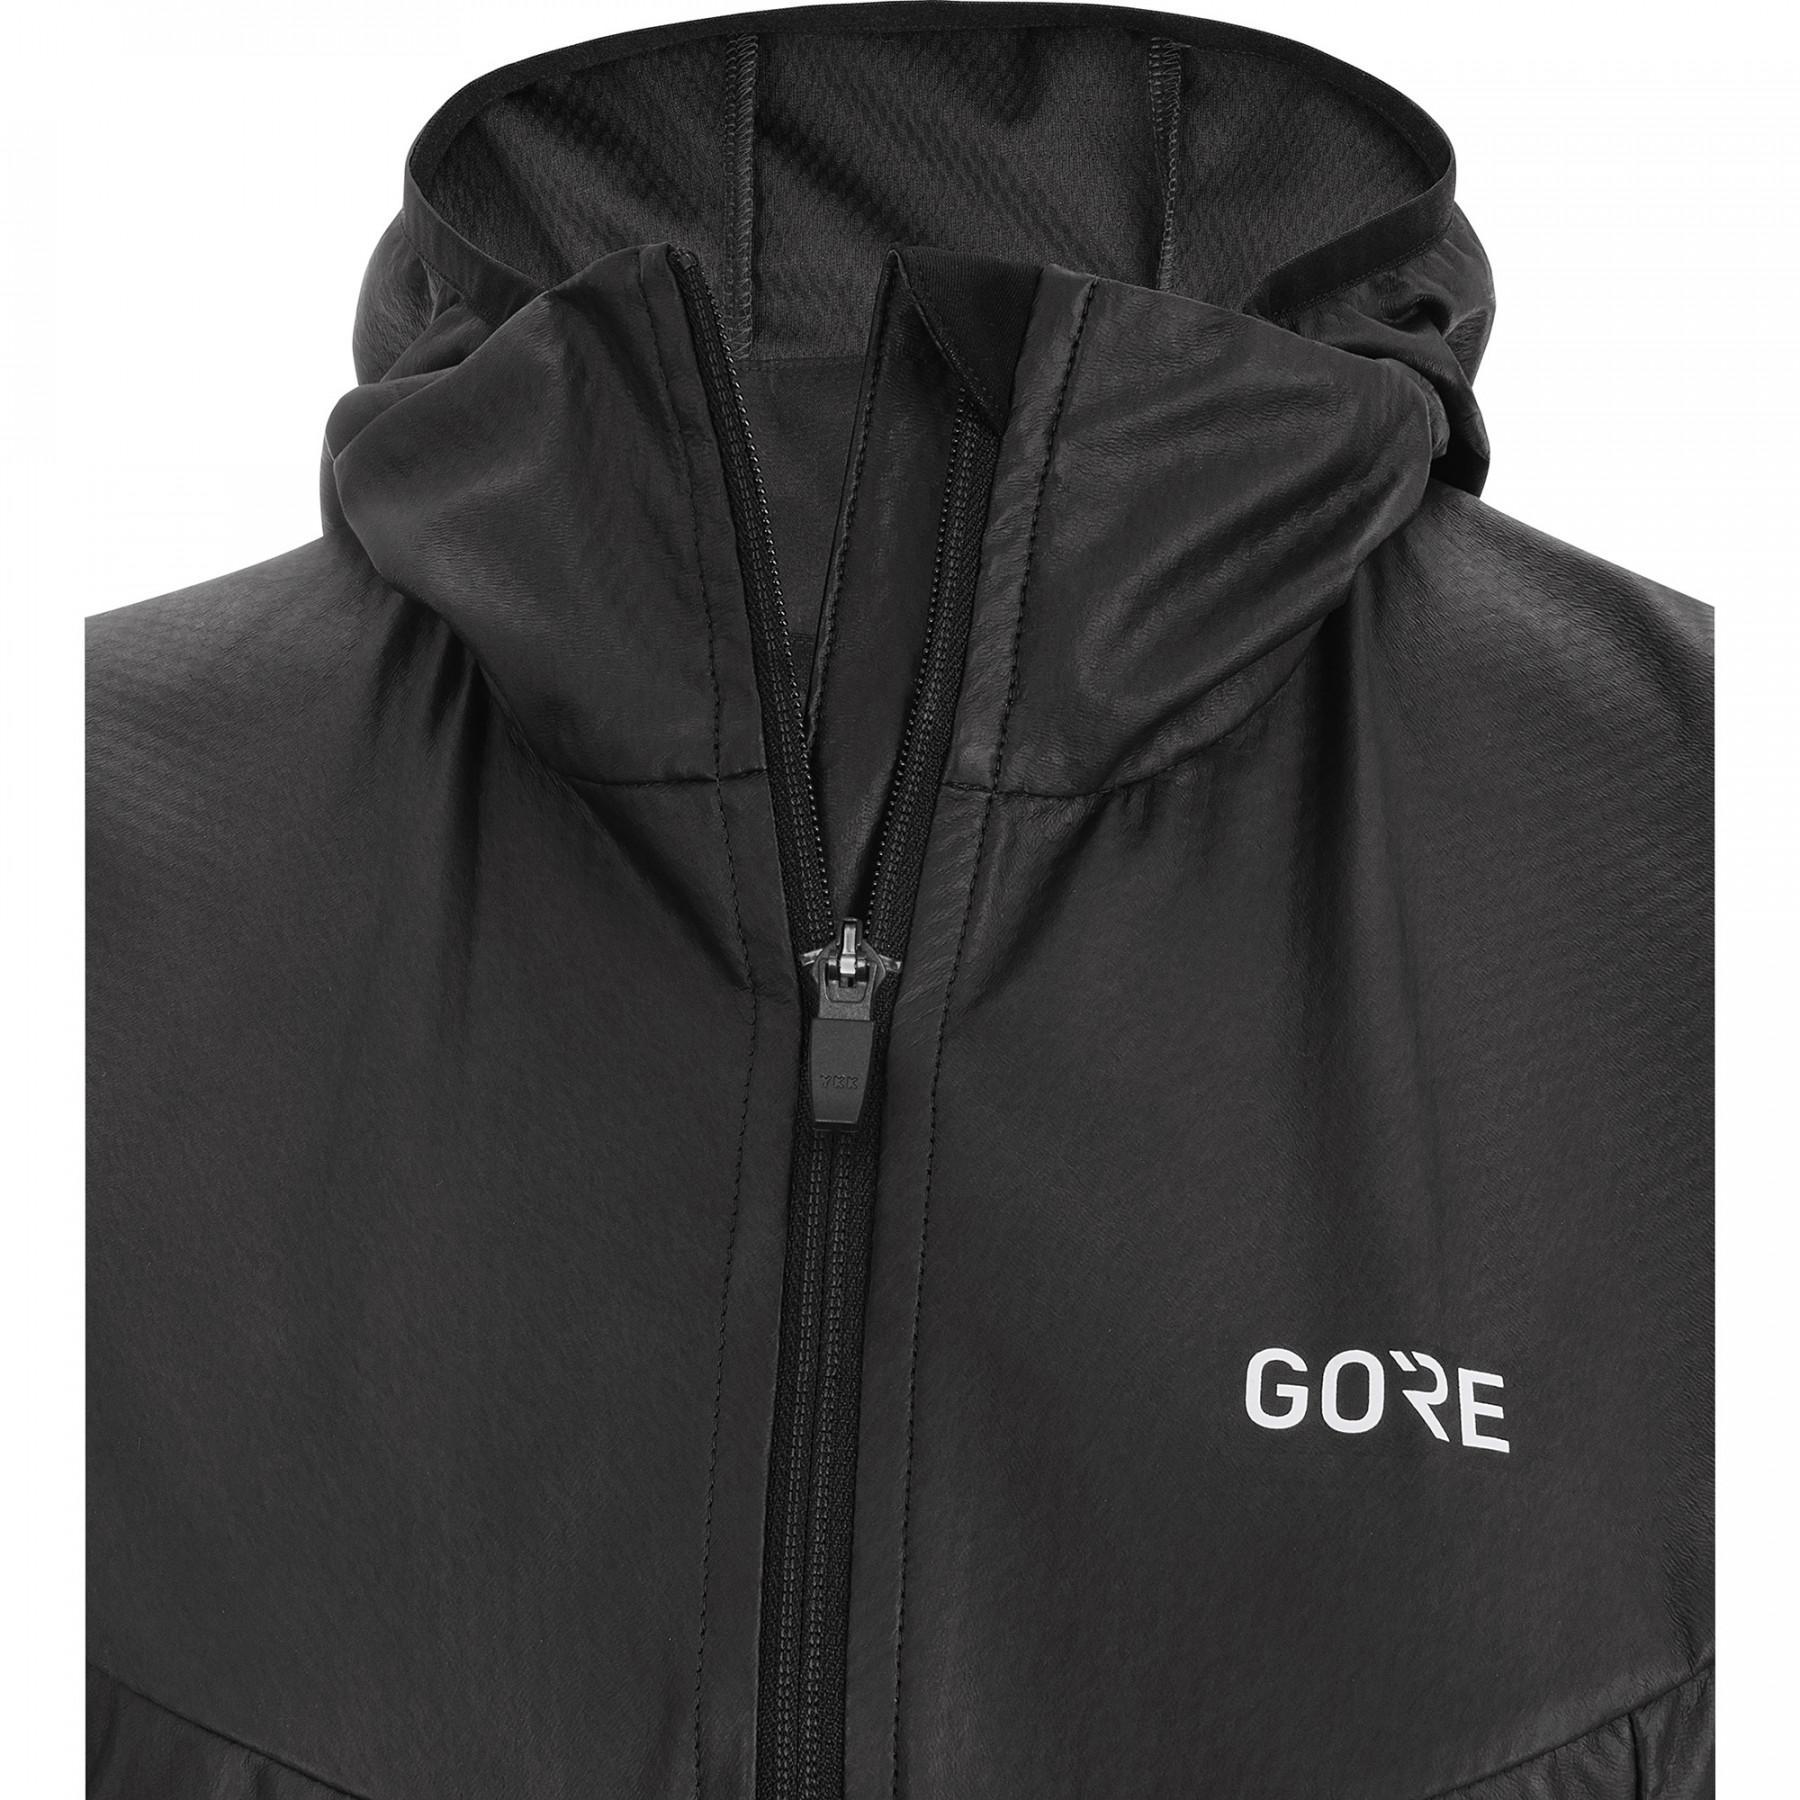 Jacket woman Gore R5 GTX